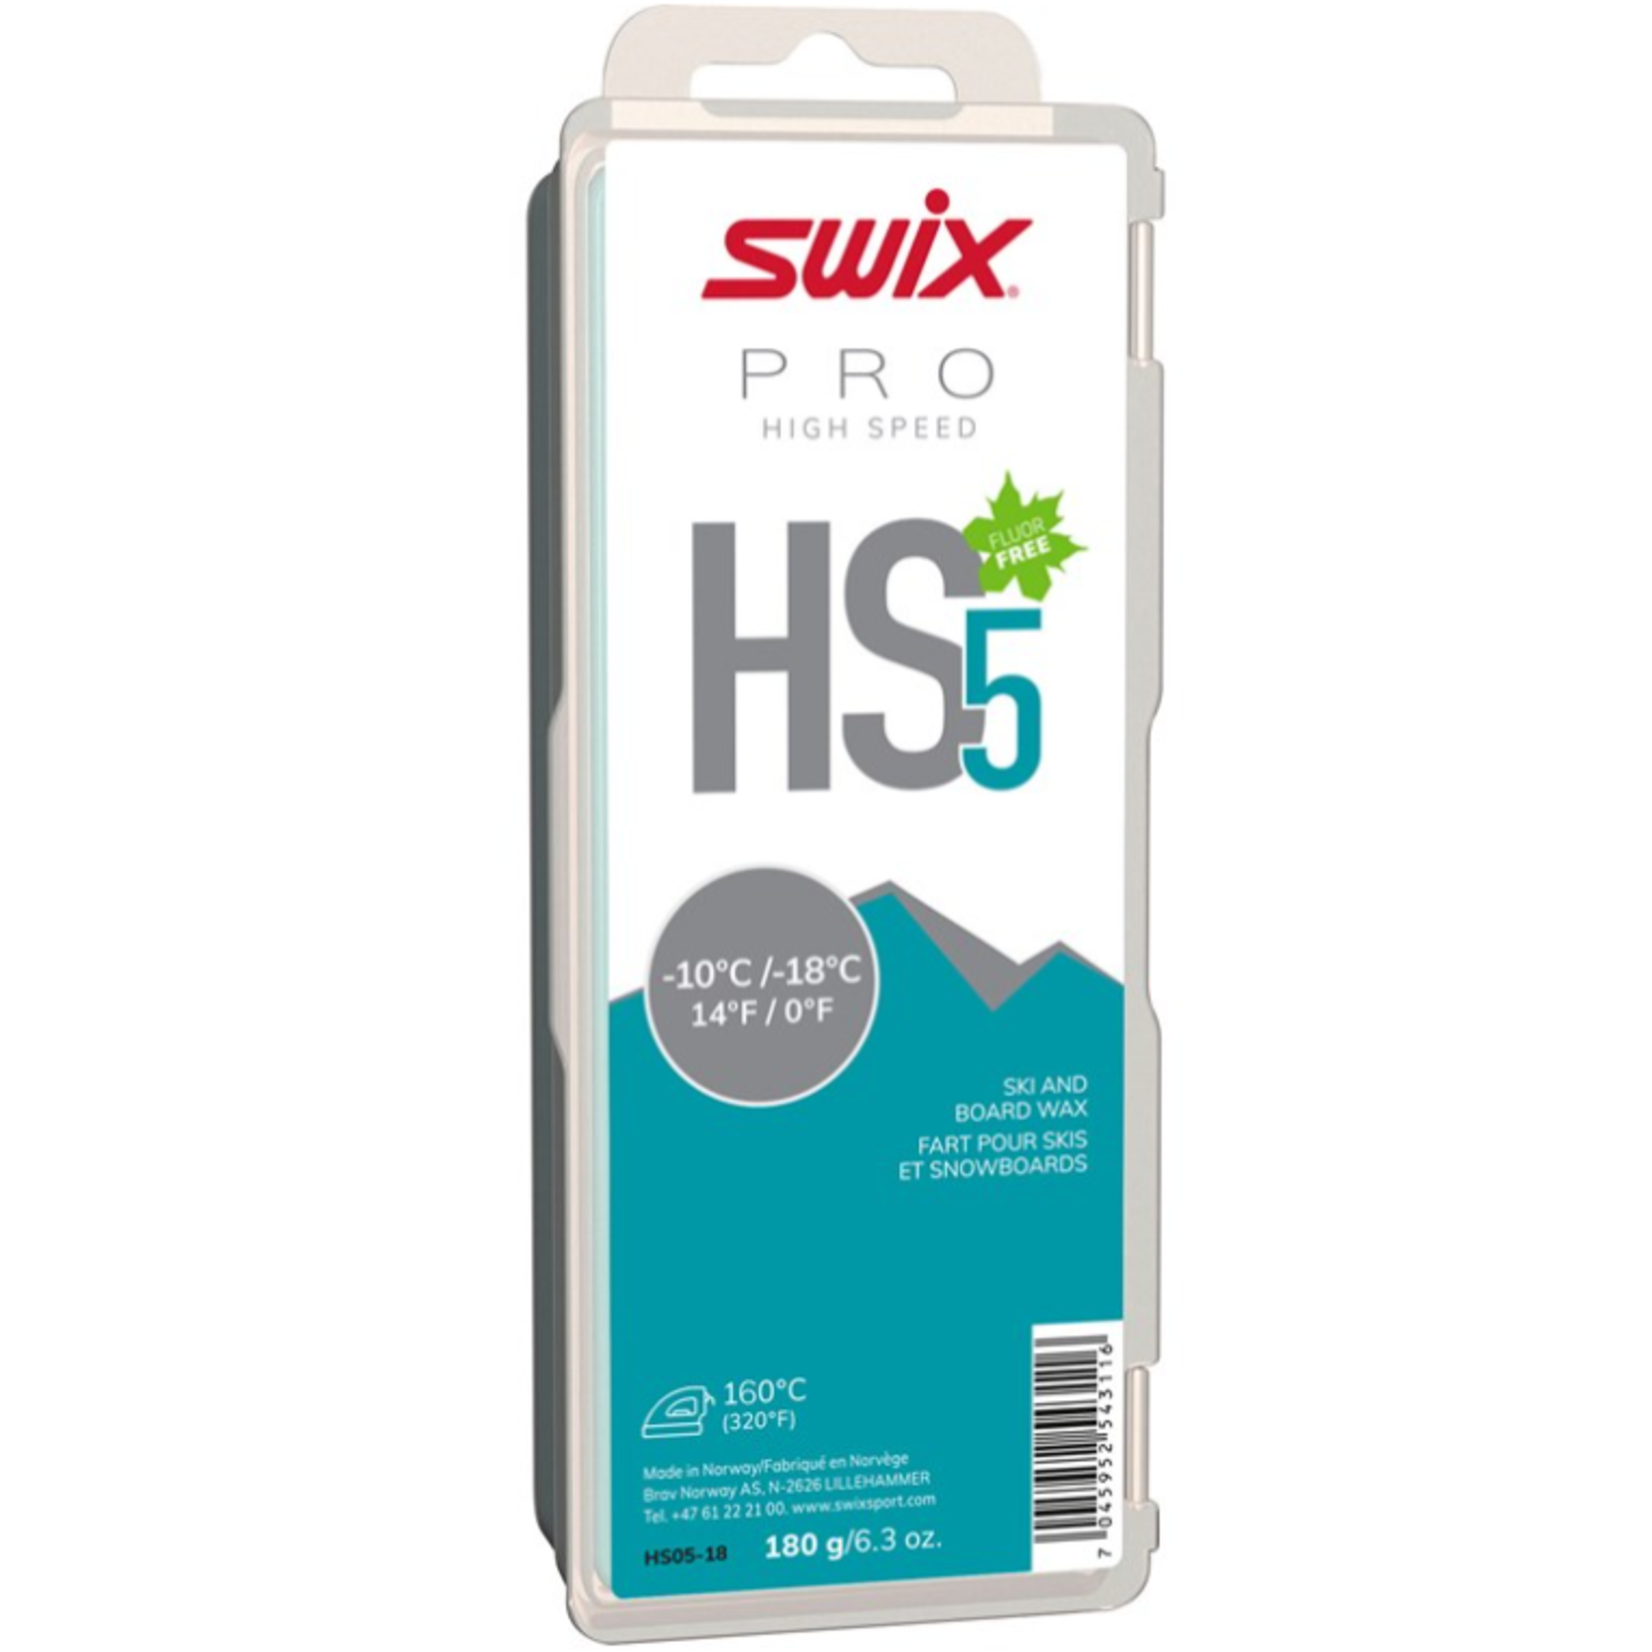 Swix Swix HS5 Turquoise, -10°C/-18°C, 180g